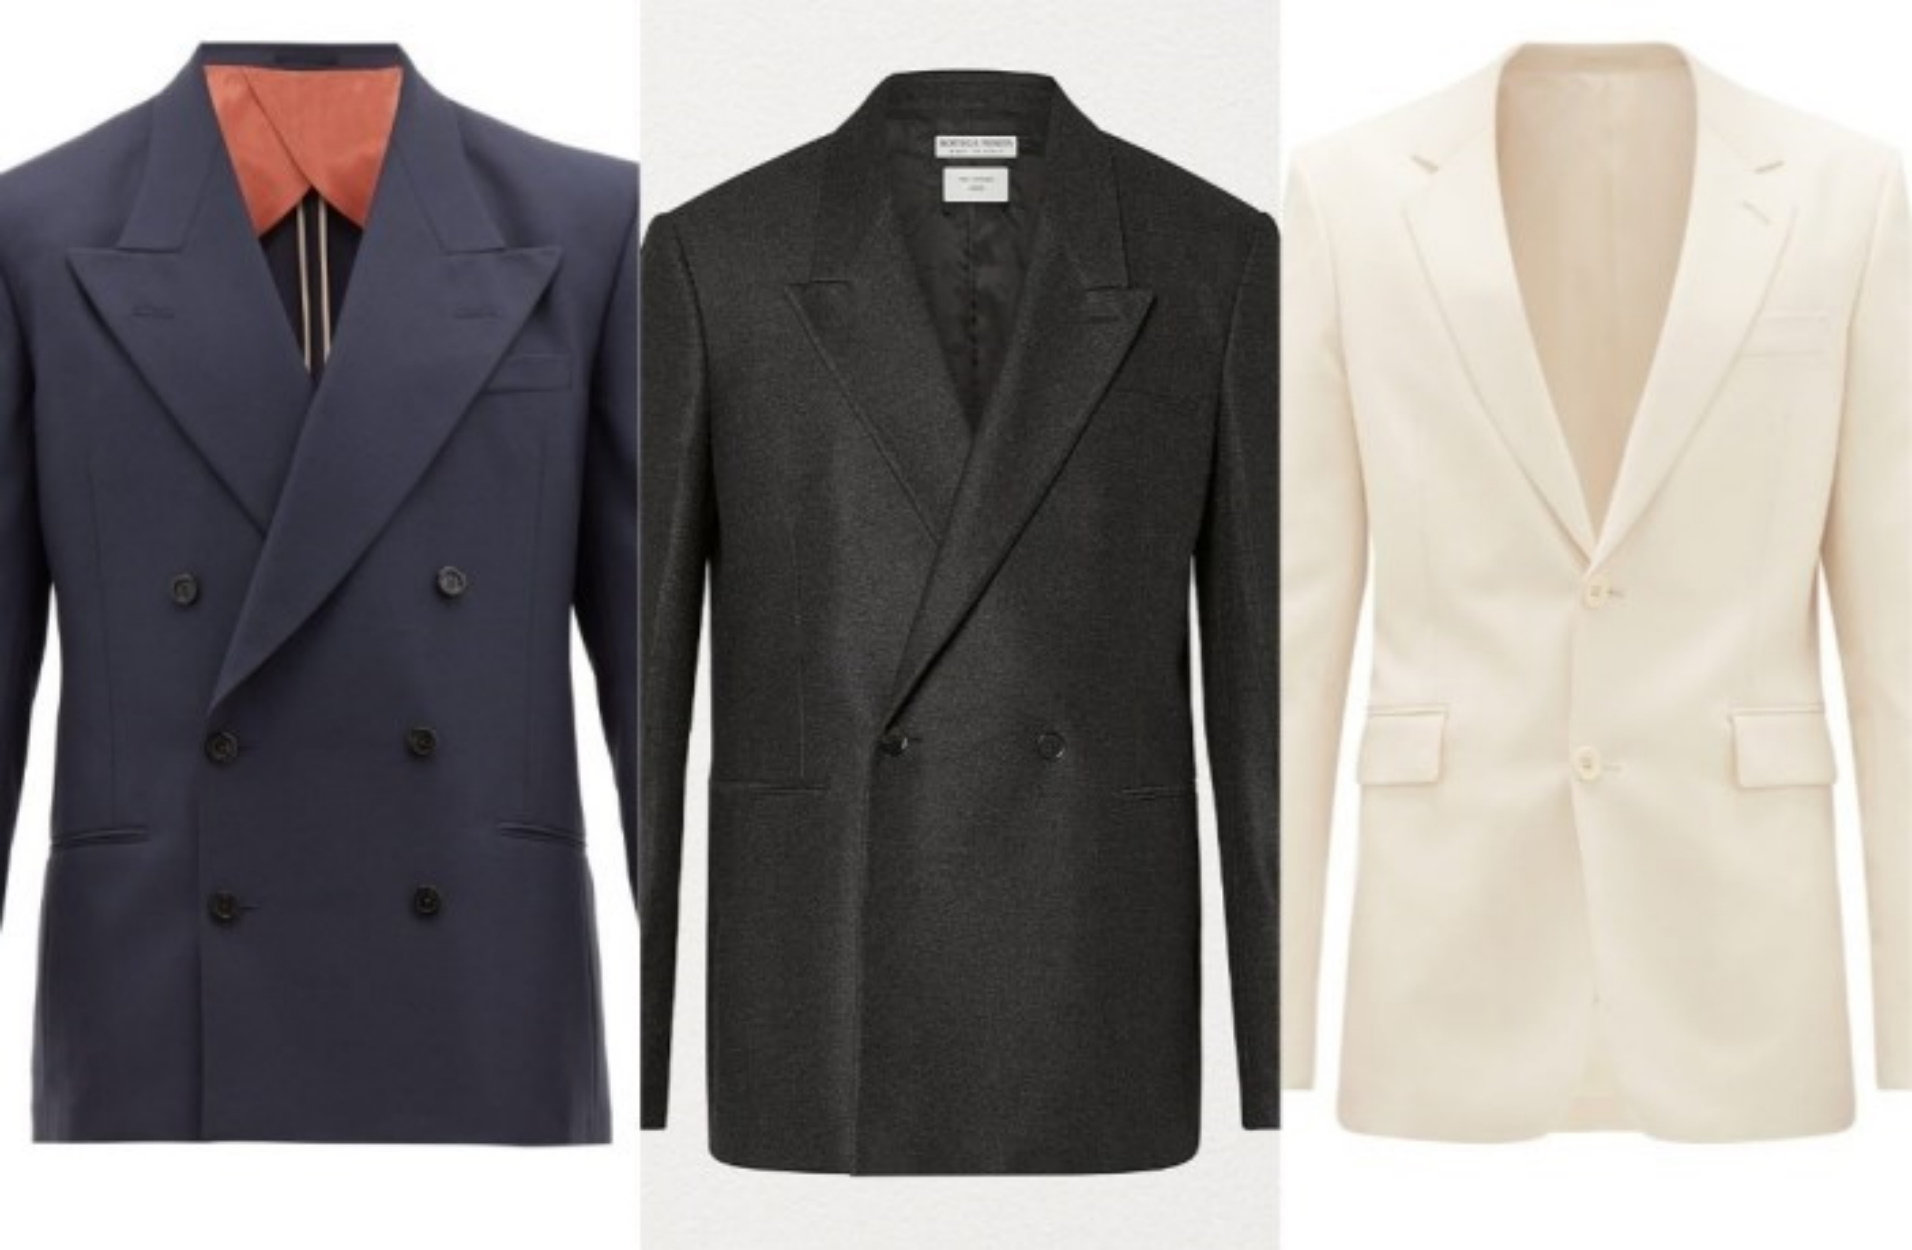 9 κανόνες που πρέπει να ακολουθείς όταν φοράς ένα blazer